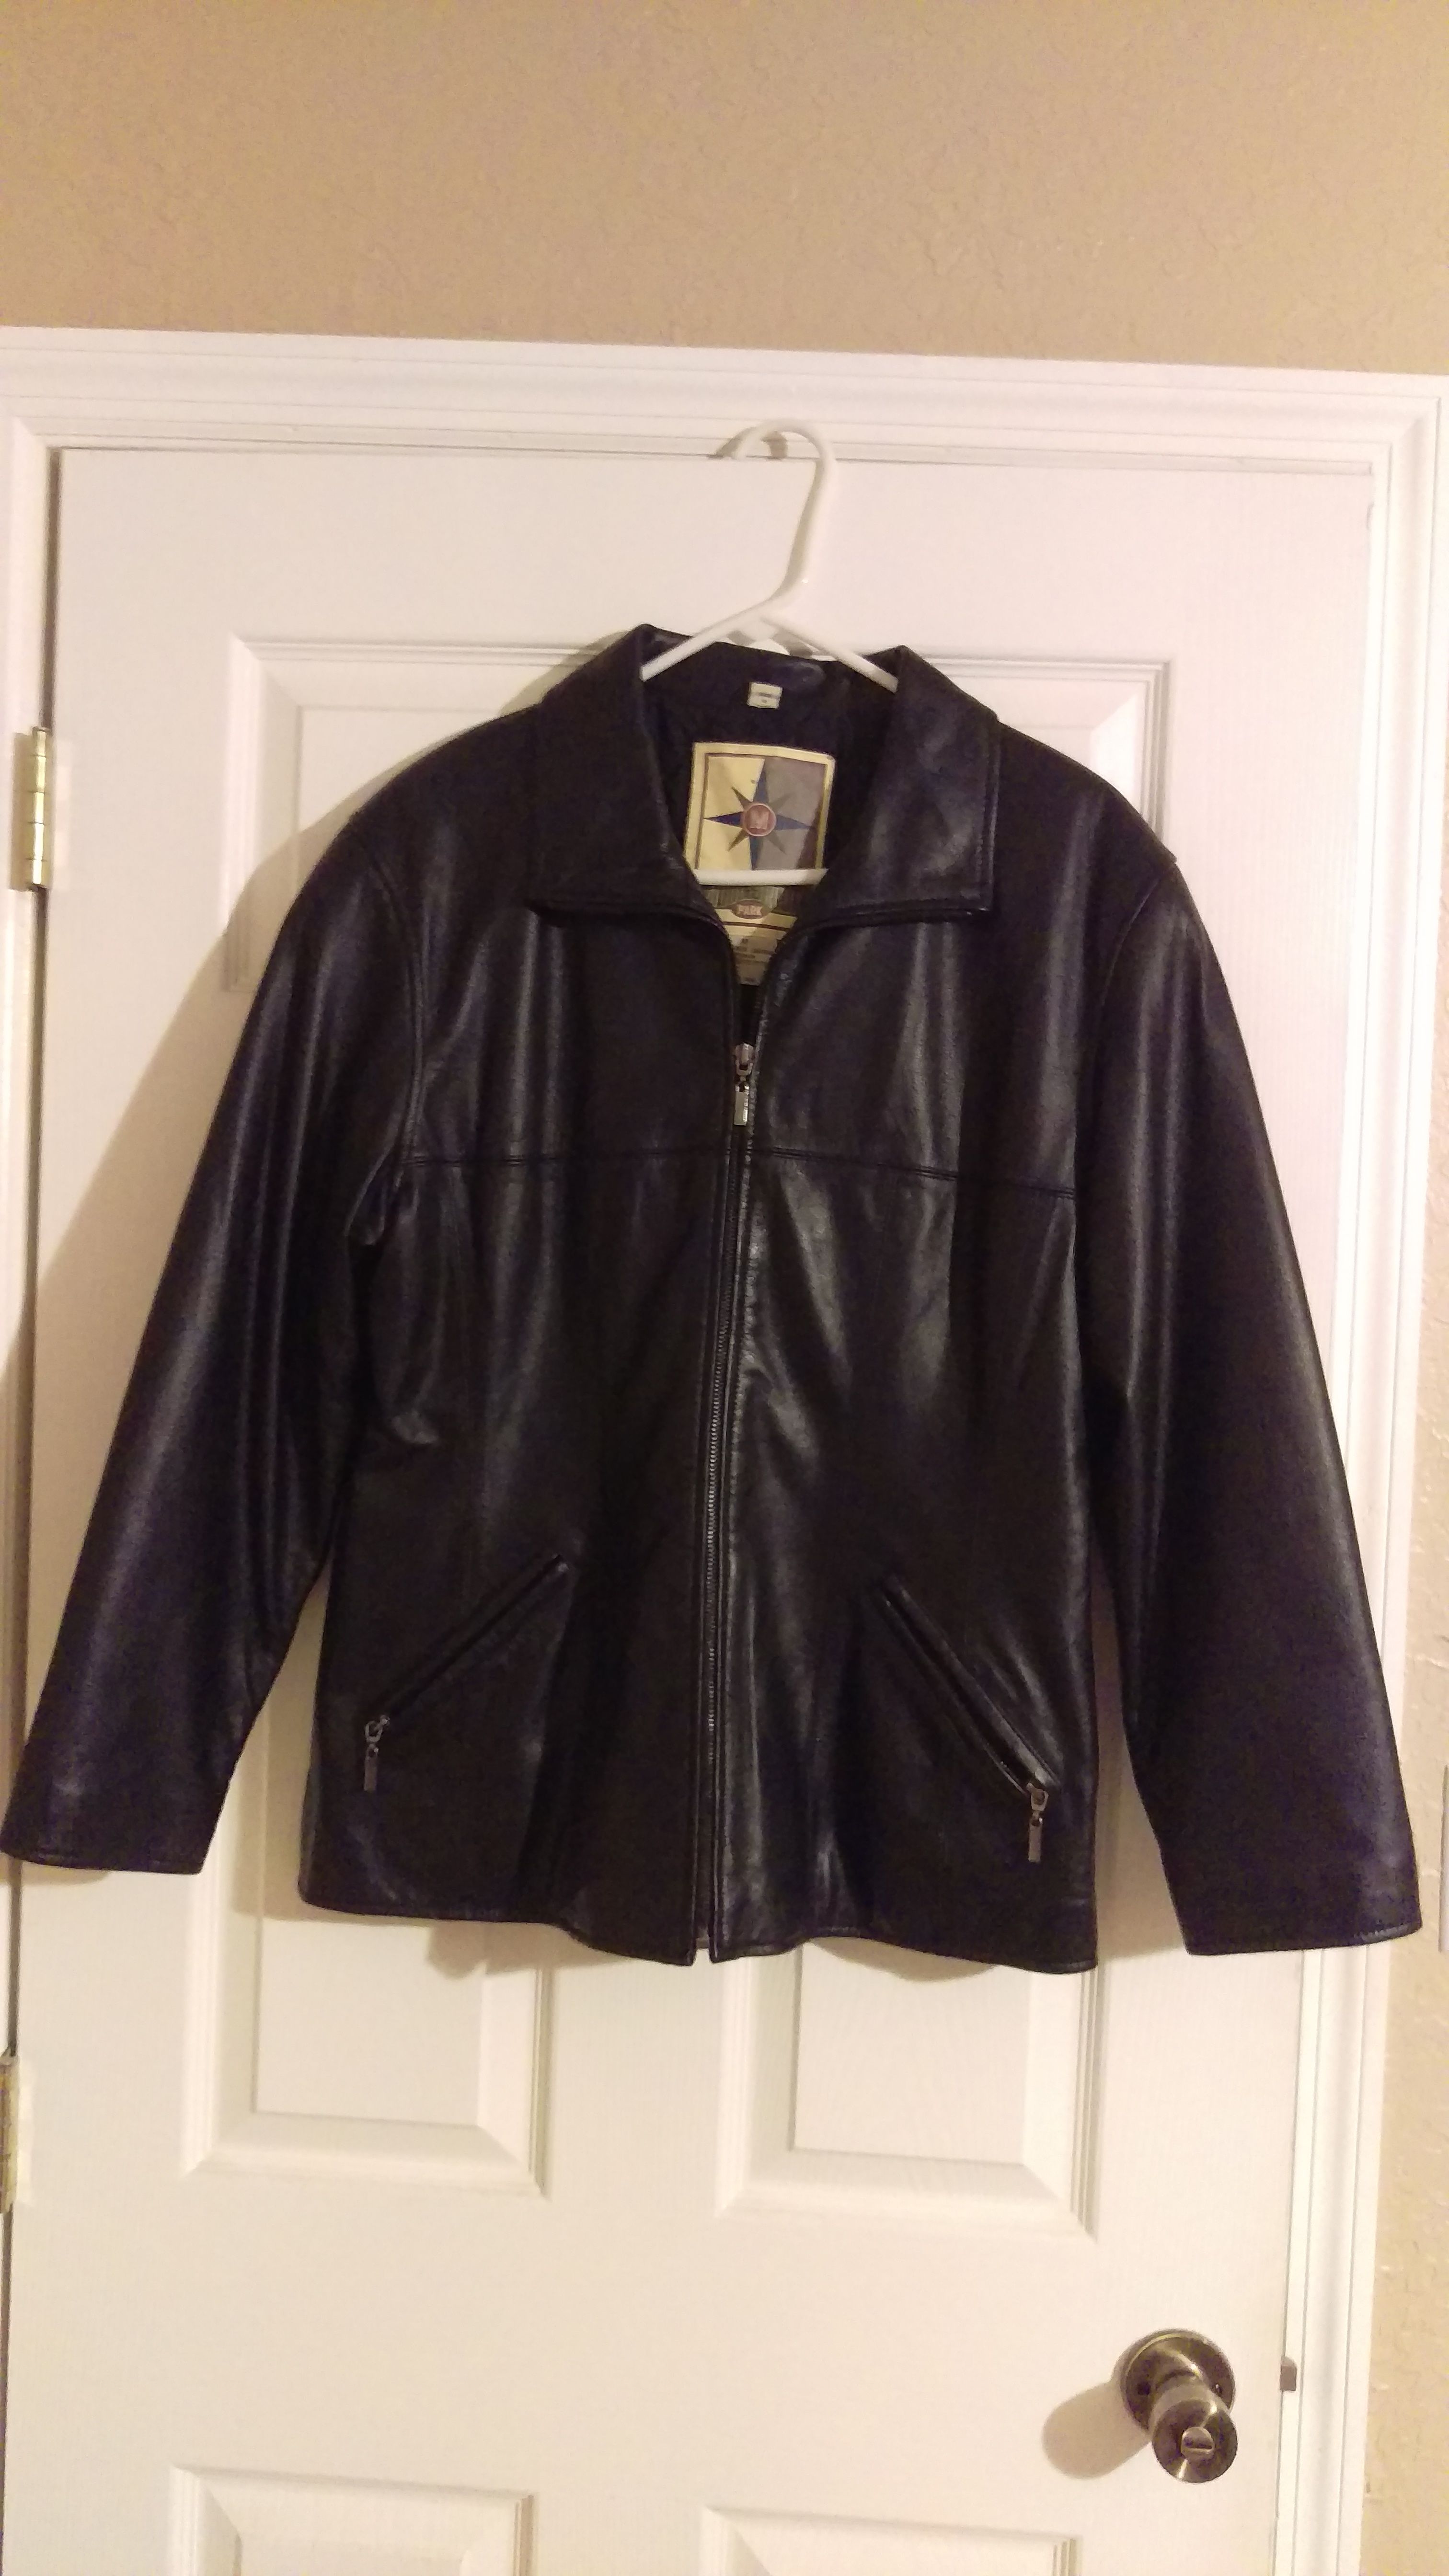 Middlebrook Park Leather Jacket